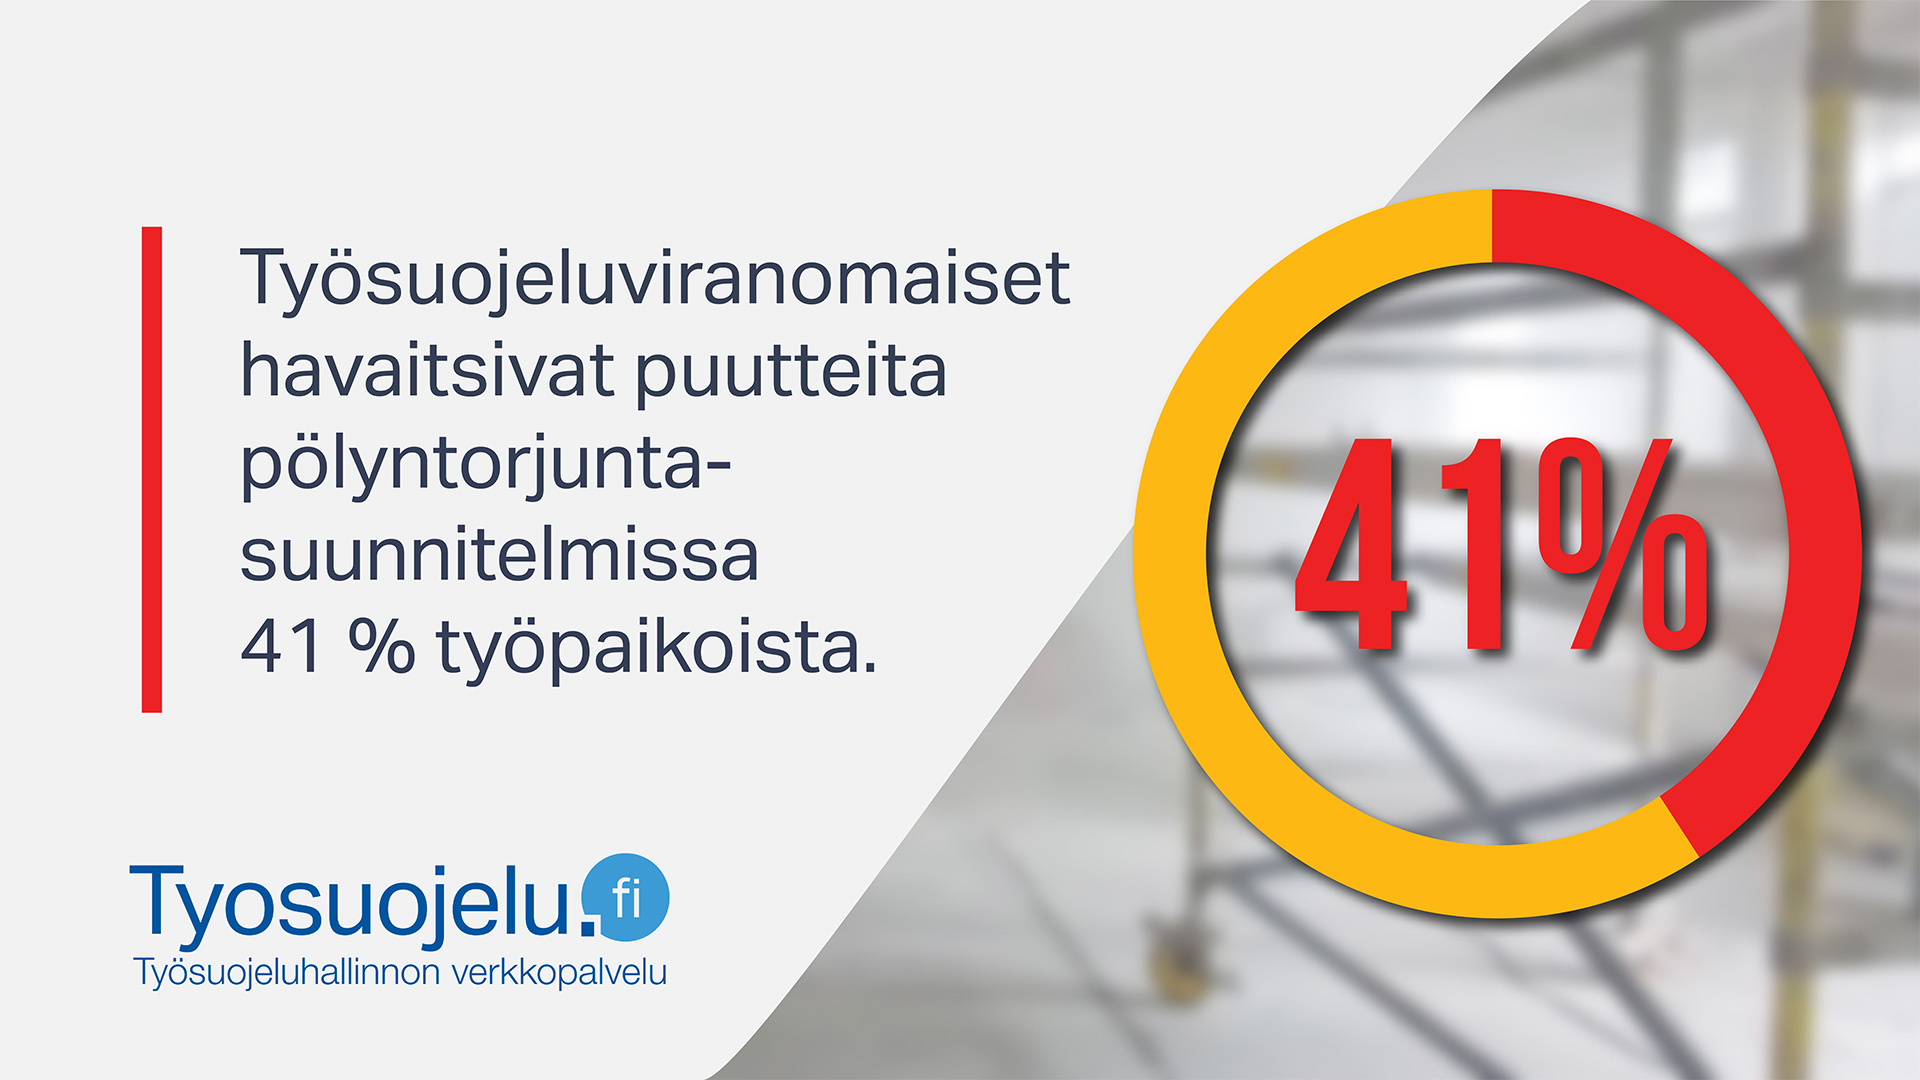 Teksti: Työsuojeluviranomaiset havaitsivat puutteita pölyntorjuntasuunnitelmissa 41% työpaikoista. Tyosuojelu.fi-logo.